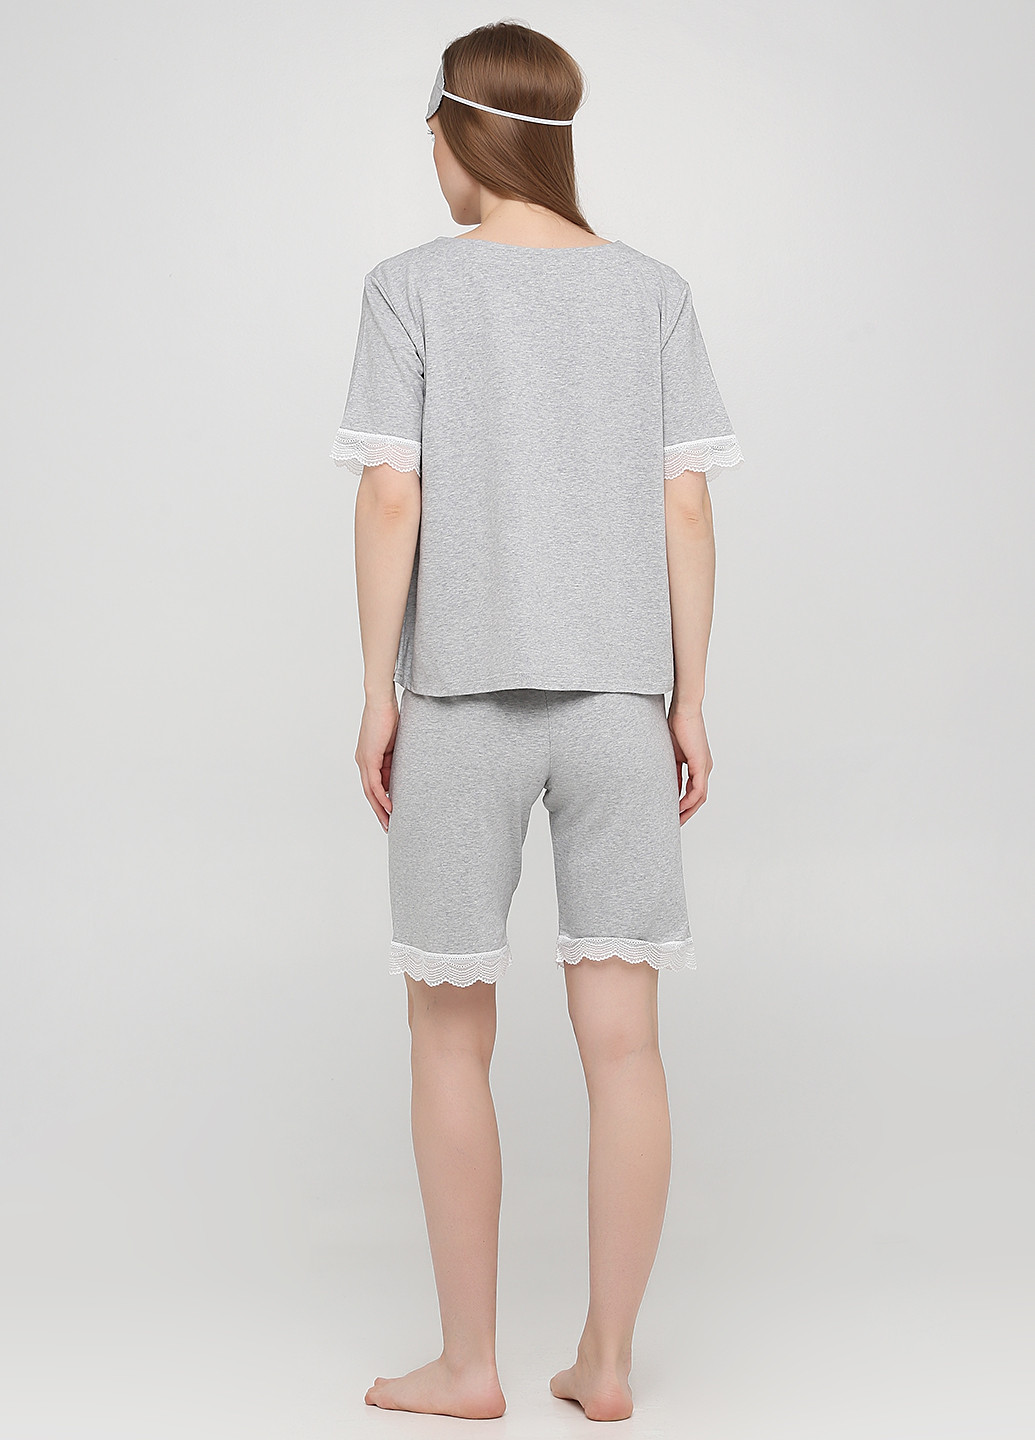 Світло-сіра всесезон піжама (футболка, шорти, маска) футболка + шорти Lucci